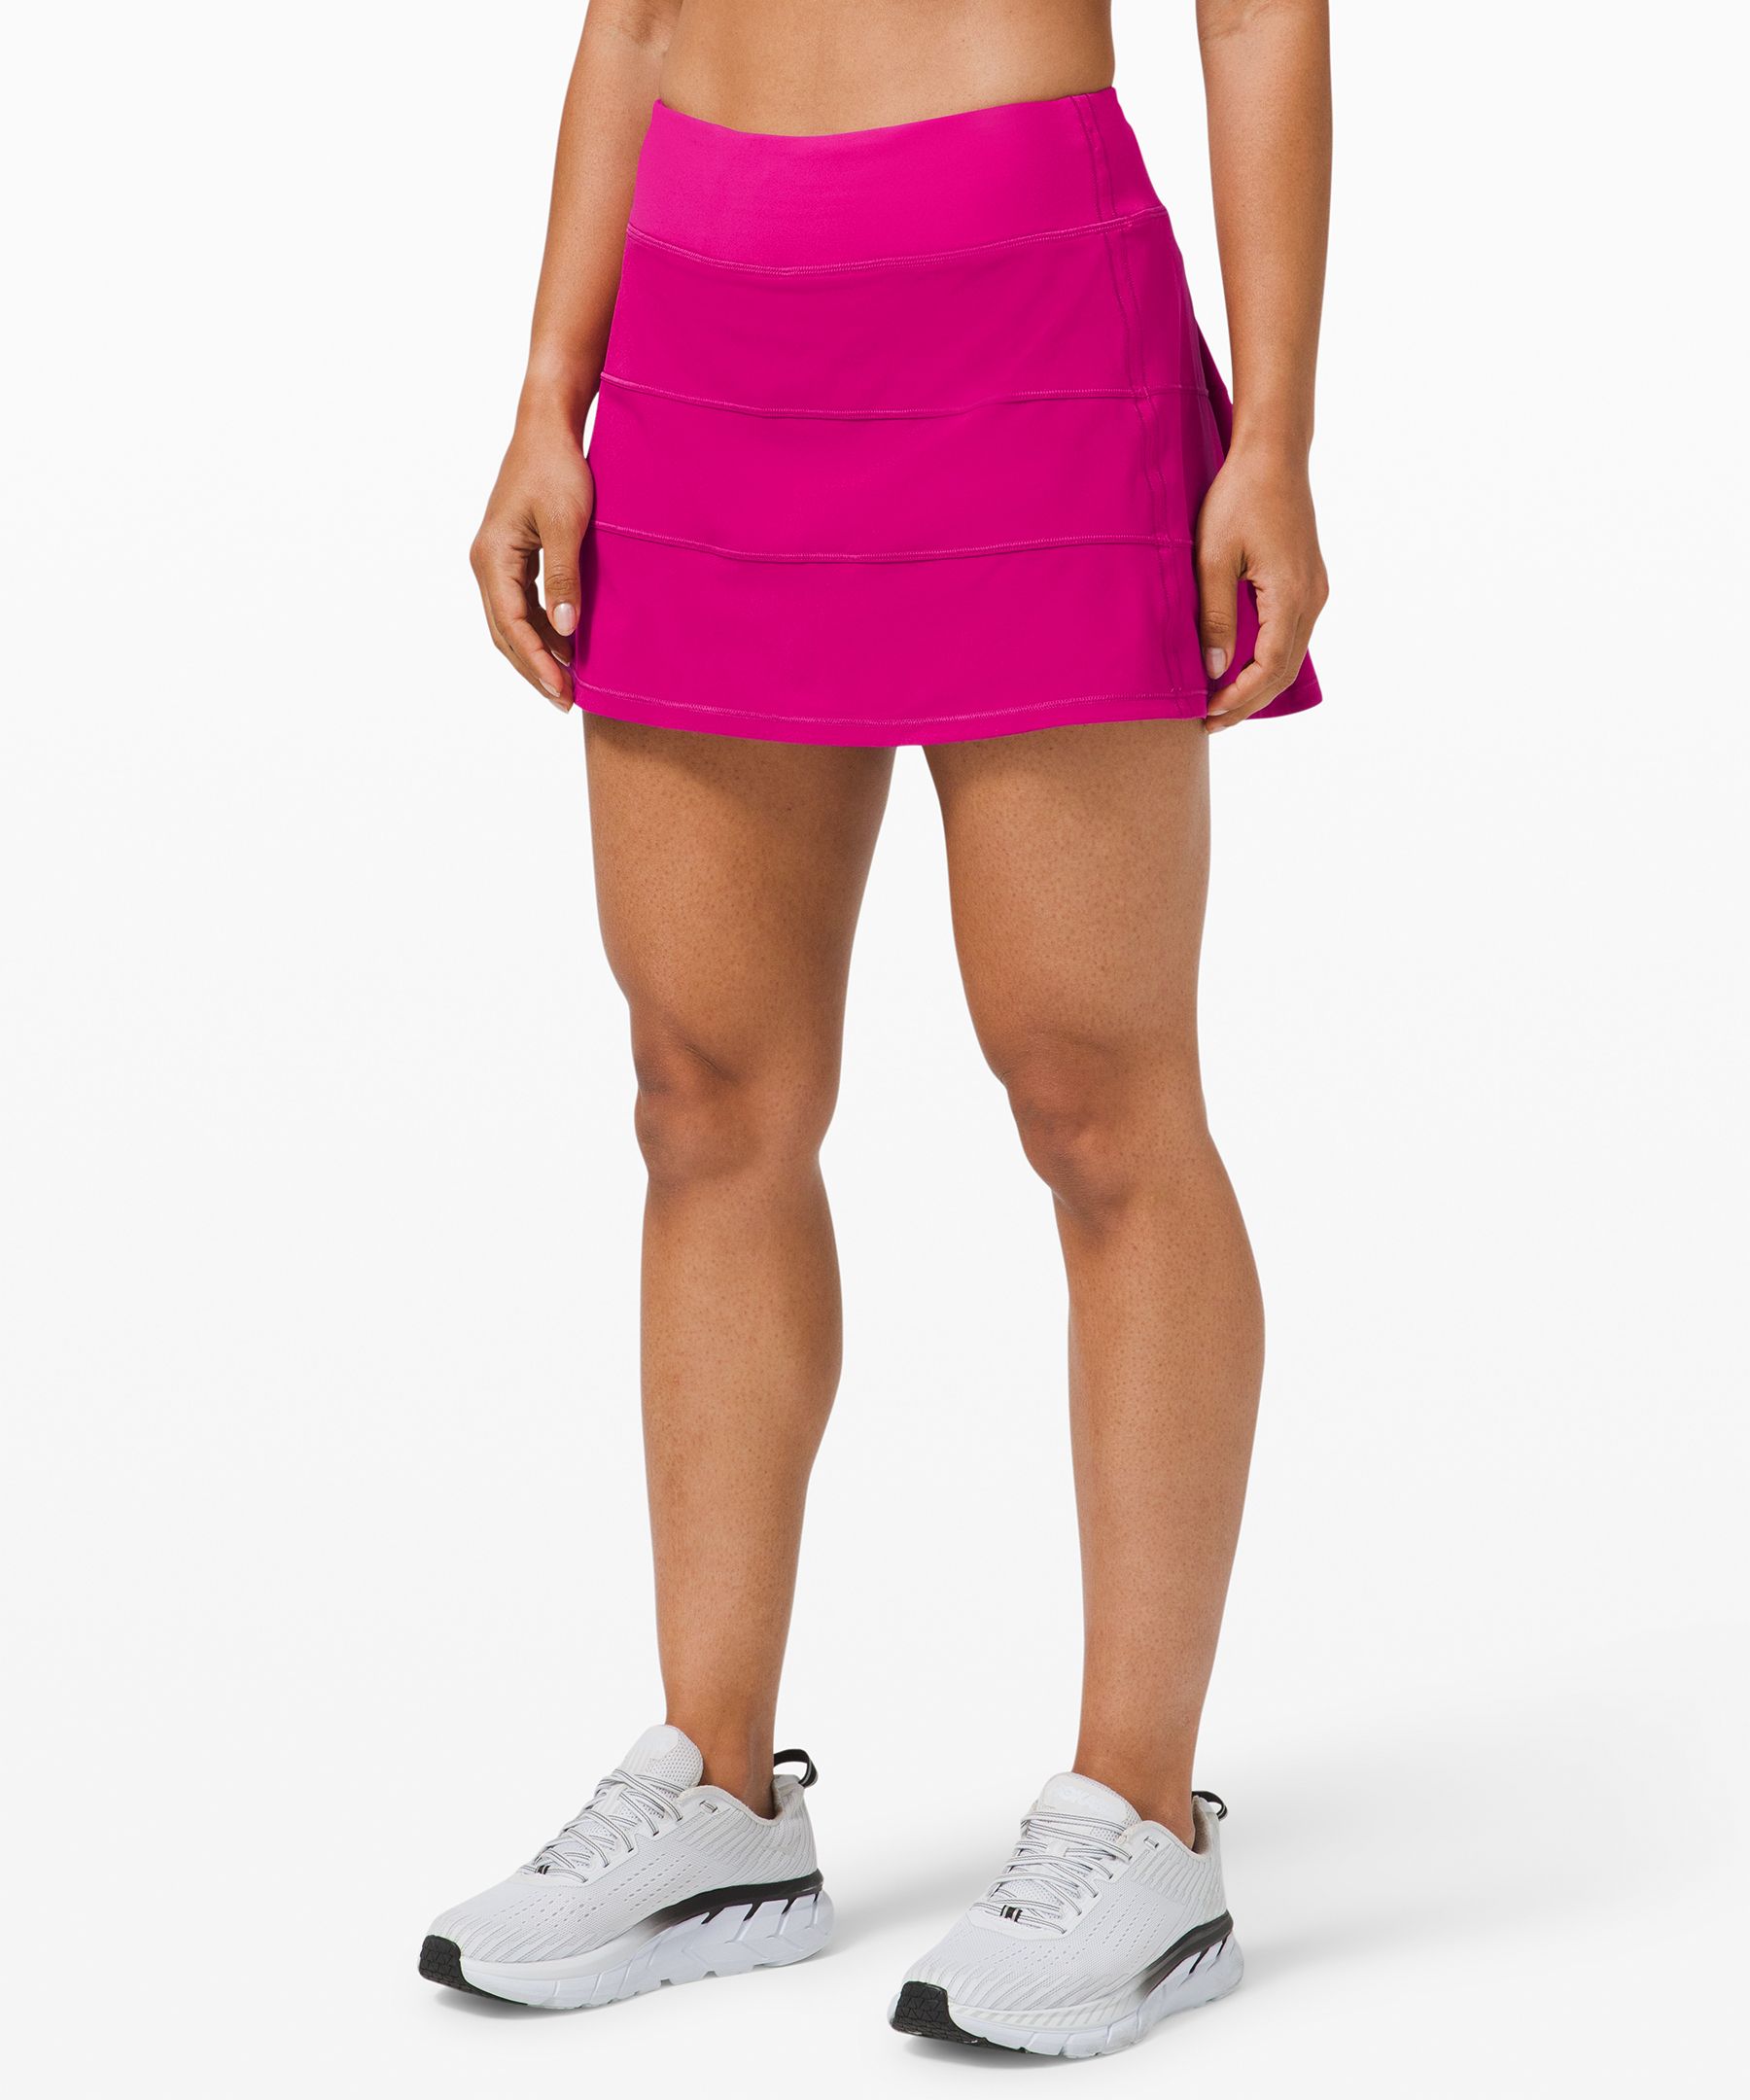 Lululemon Pace Rival Mid-rise Tennis Skirt 15 Length In Ripened Raspberry